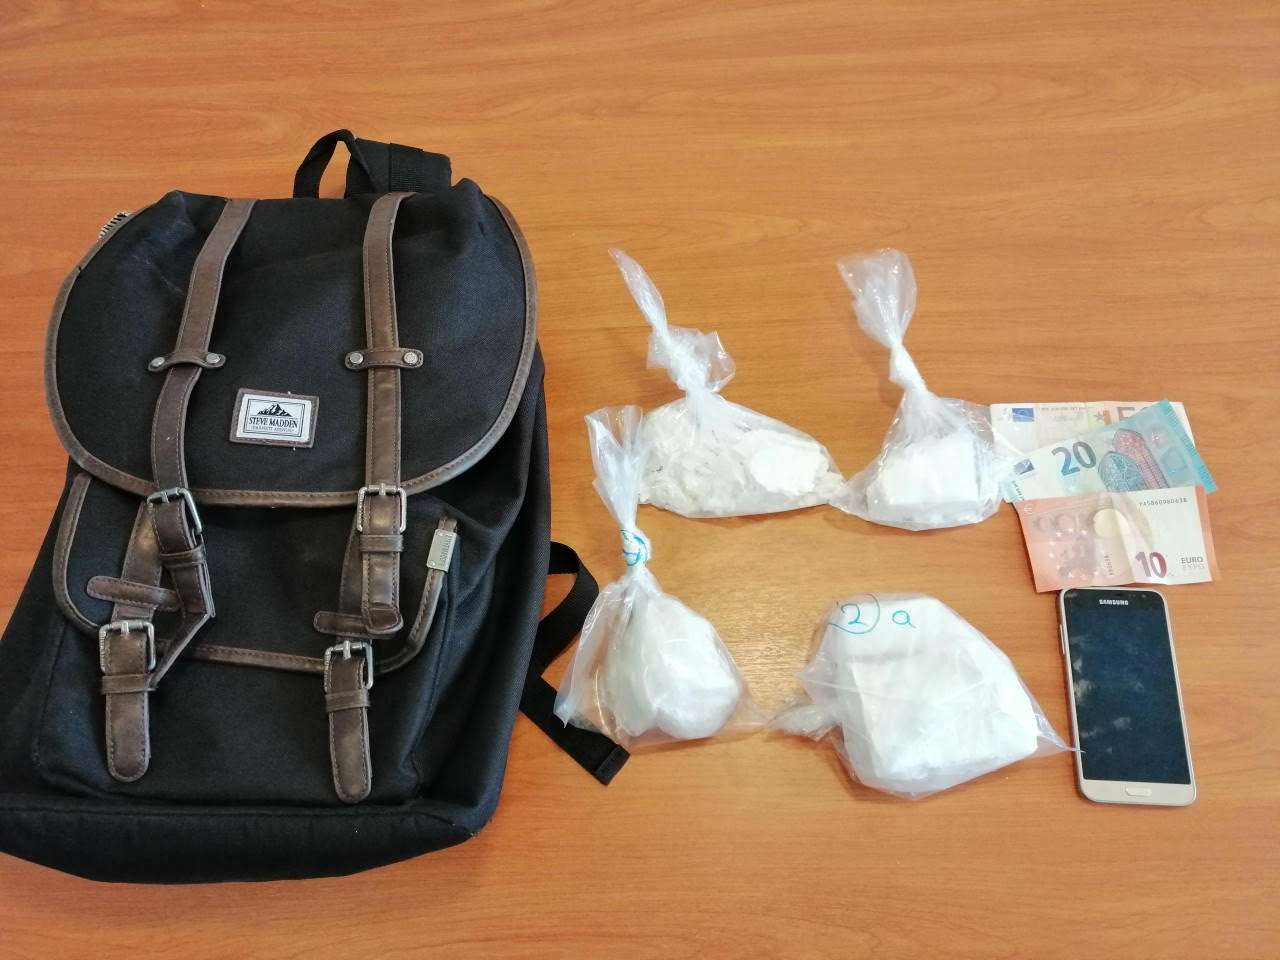 Συνελήφθησαν τρεις διακινητές κοκαΐνης σε άτομα της «υψηλής κοινωνίας»